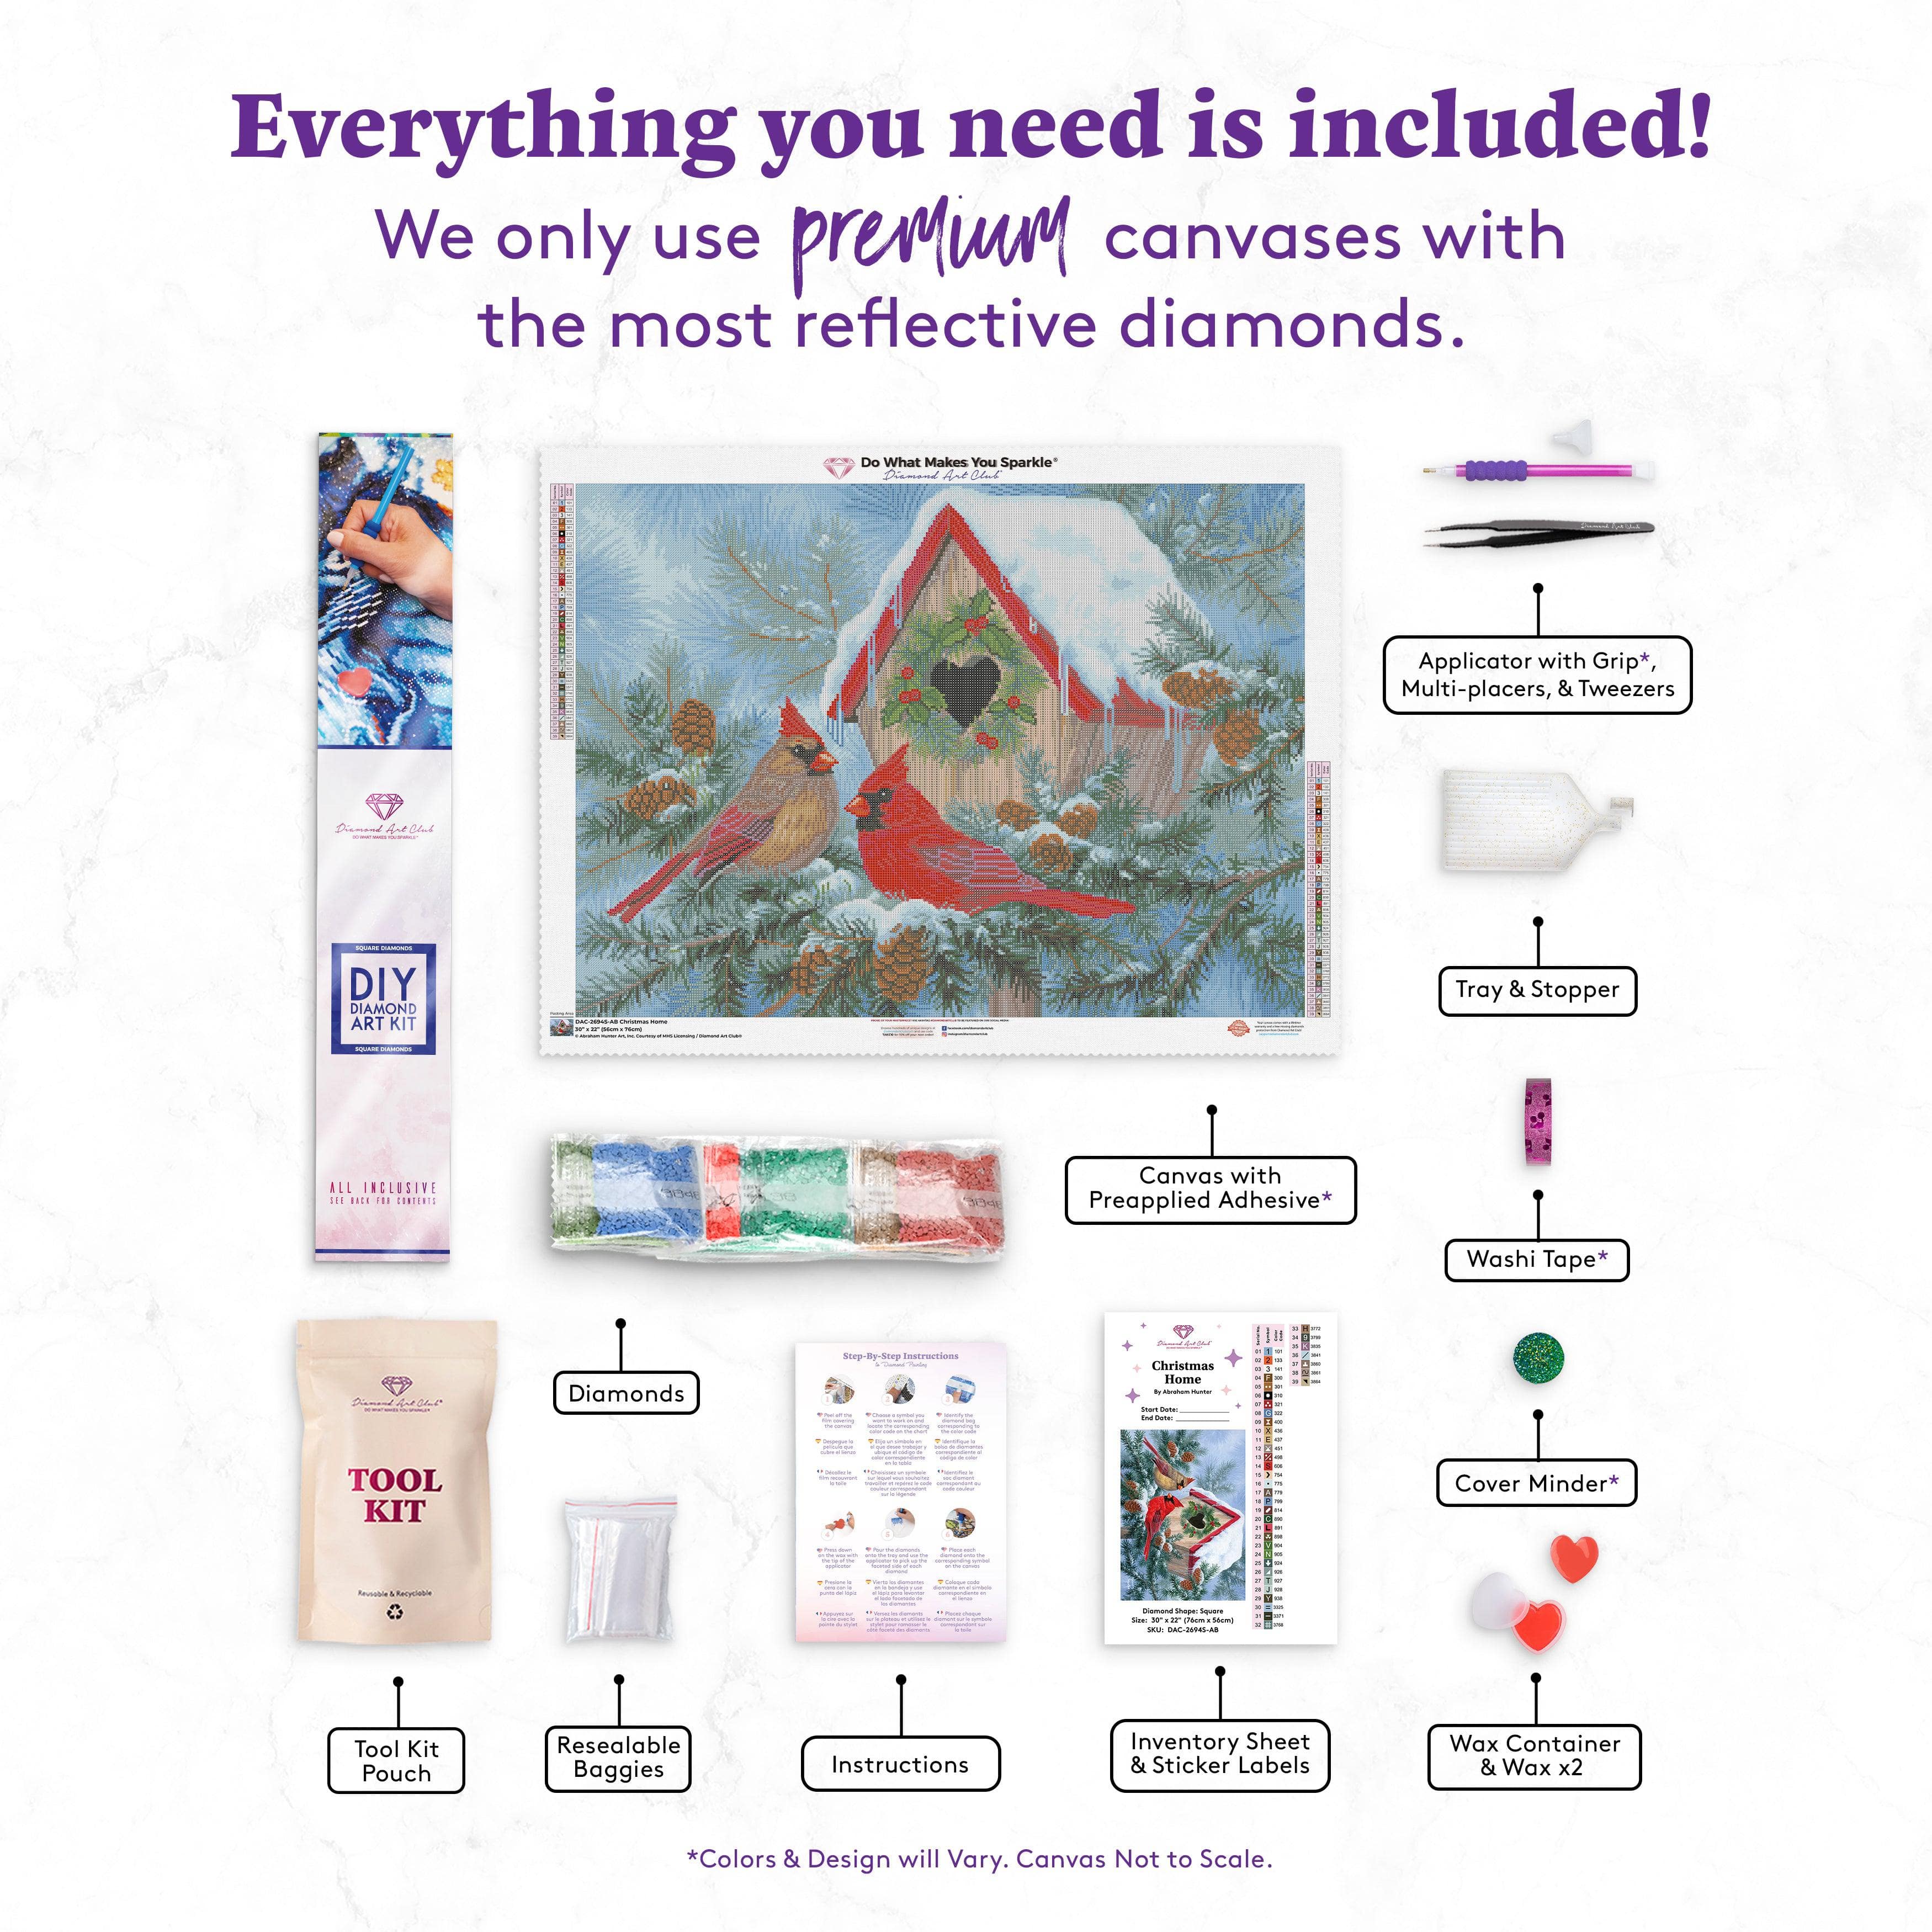 Diamond Painting WIP & Chat - Diamond Art club - Christmas Globe - Diamond  Art 